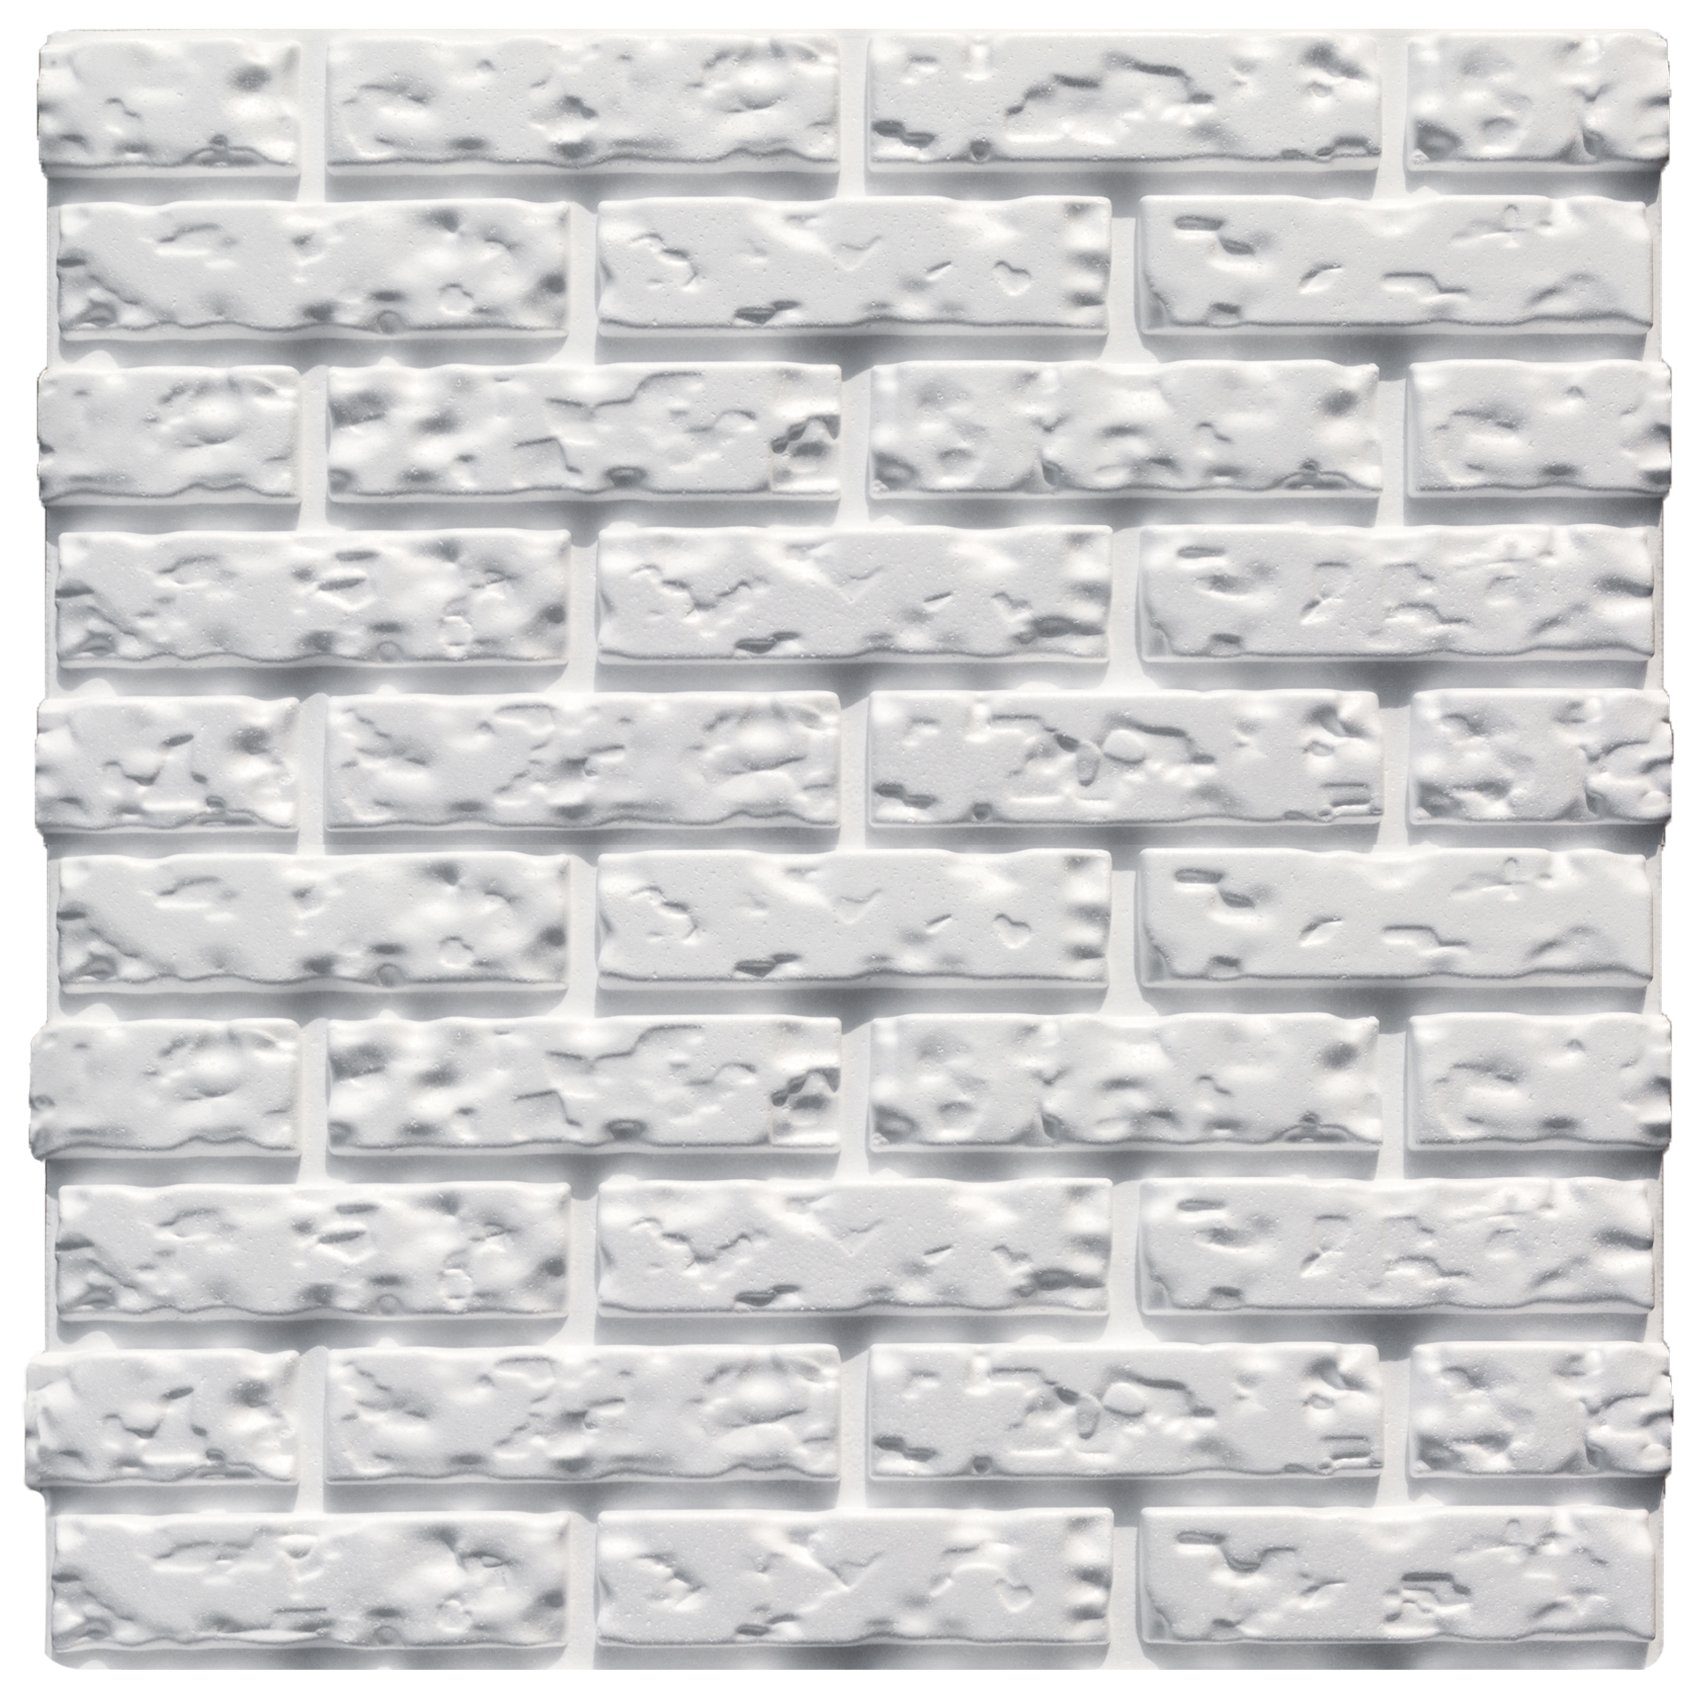 Hexim Wanddekoobjekt Wandpaneele (3D Paneele 60x60cm Sparpakete - Wand- und Deckengestaltung mit EPS Styroporplatten weiß - (6.48 Quadratmeter) Wandverkleidung, Deckenpaneele)